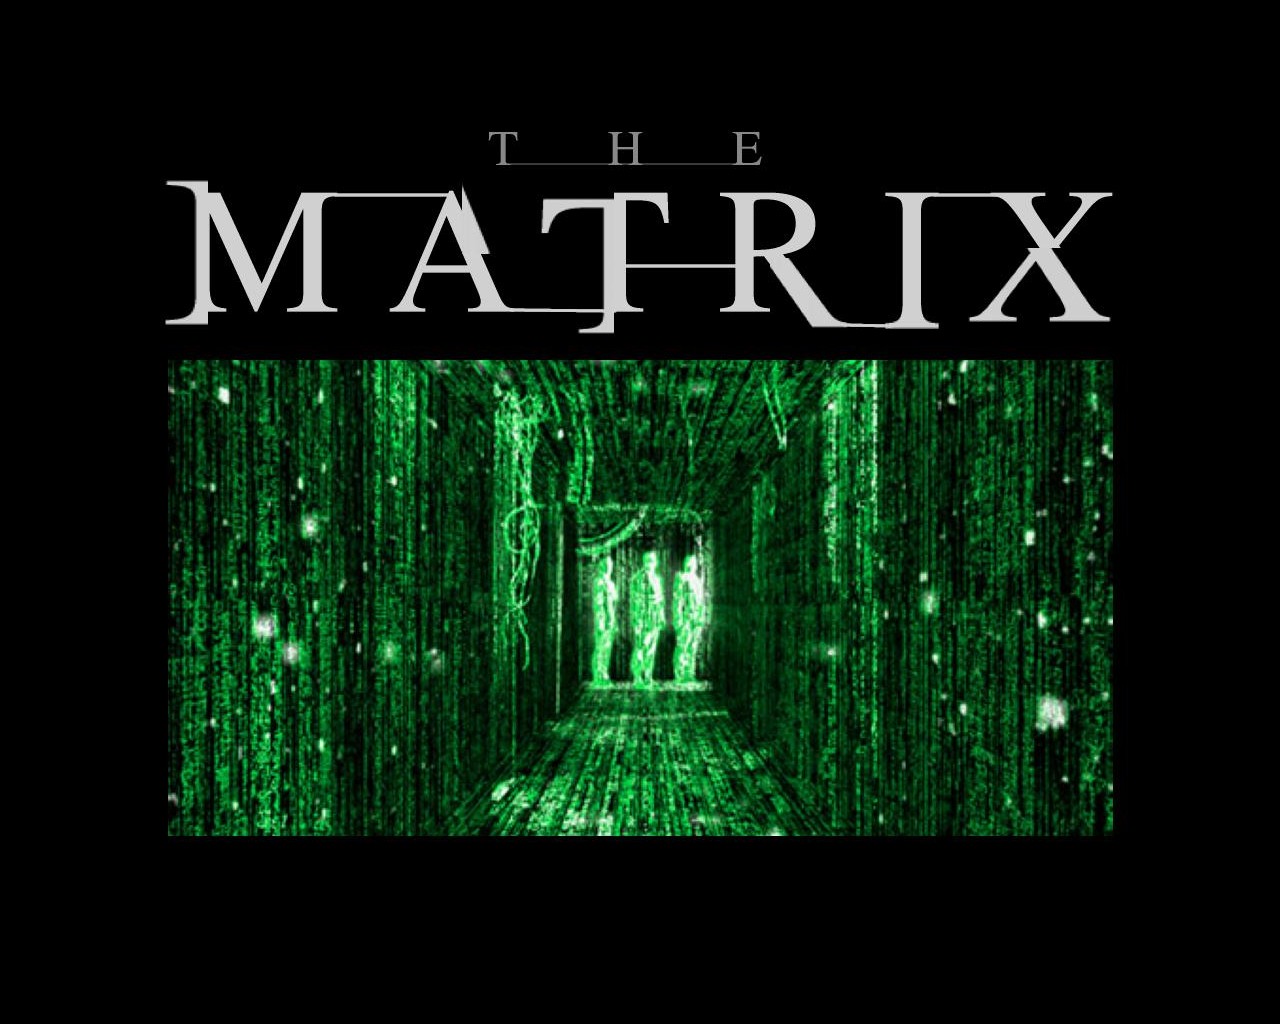 "The Matrix" desktop wallpaper number 2 (1280 x 1024 pixels)